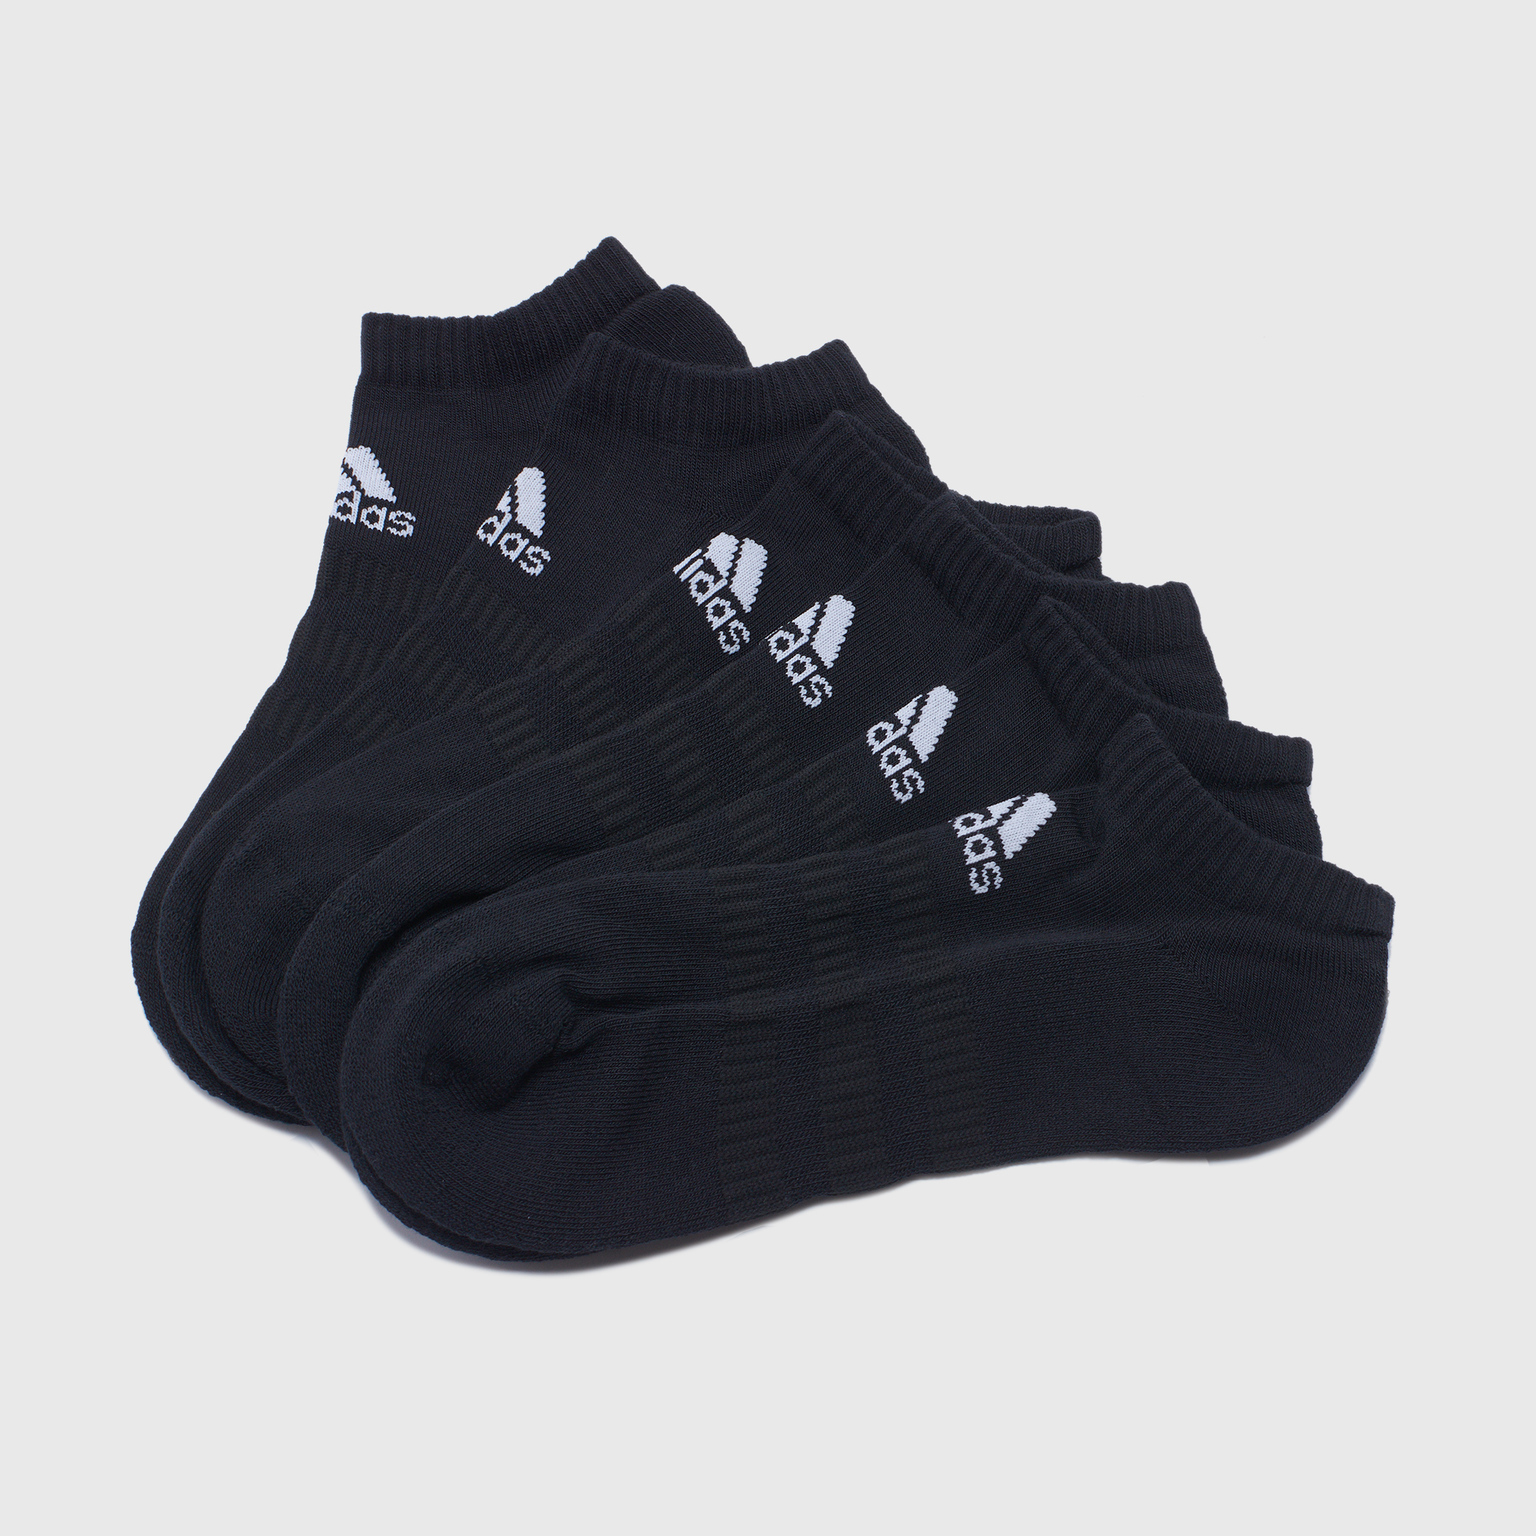 Комплект носков (3 пары) Adidas Cush Low DZ9385